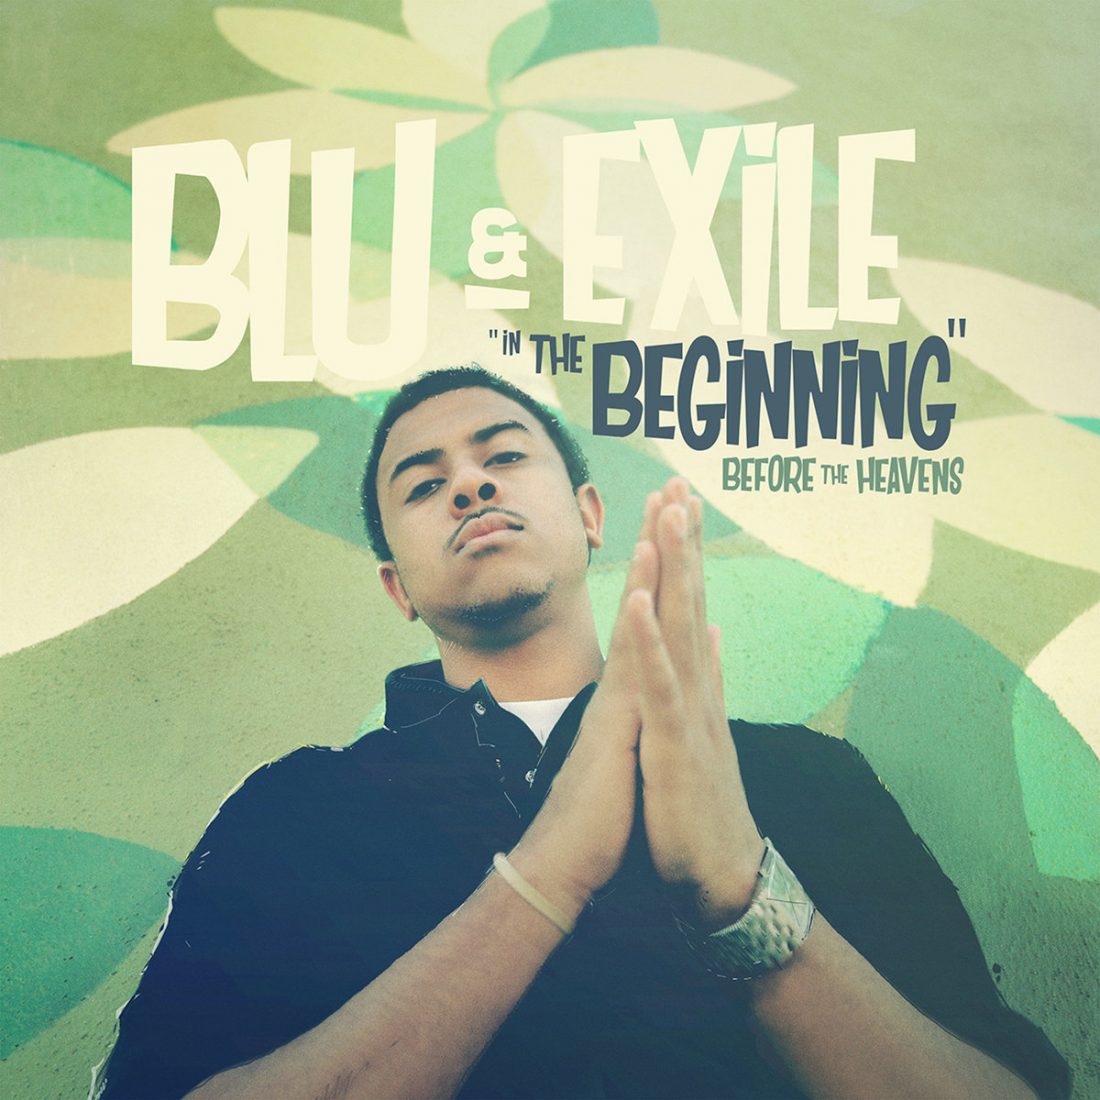 blu-exile-beginning-before-heavens